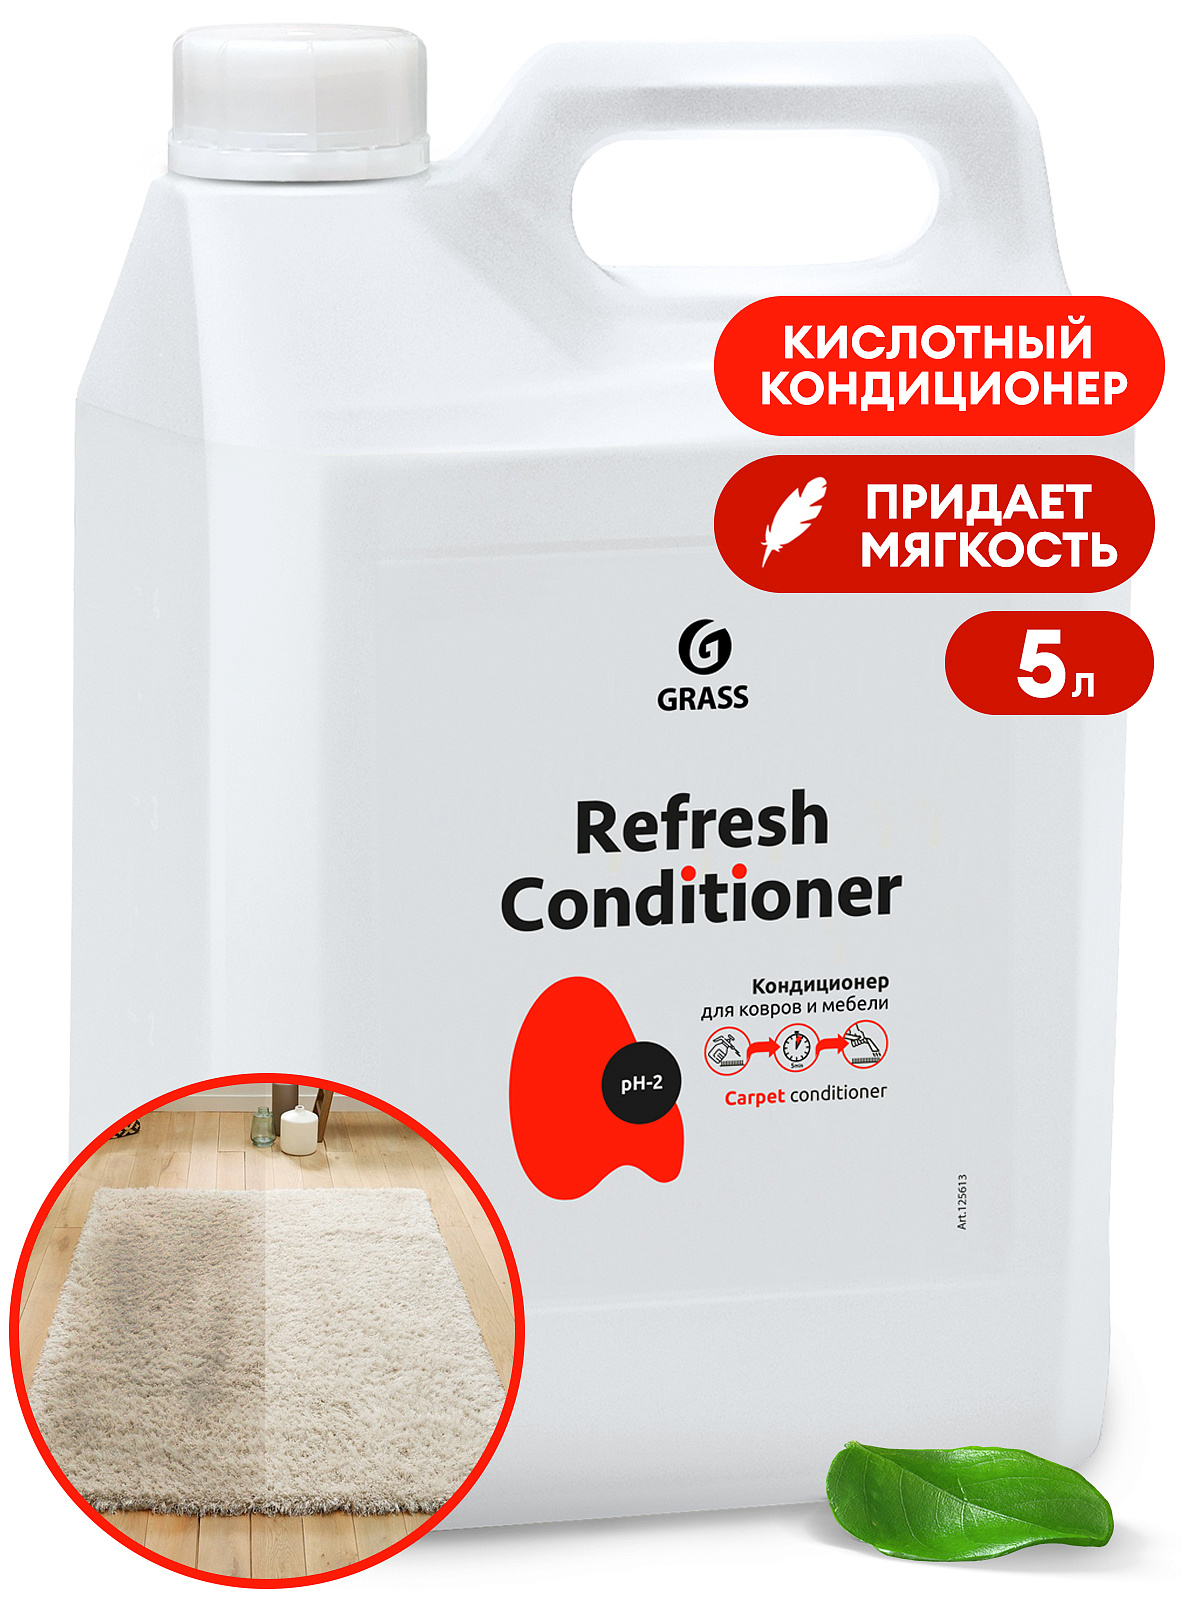 Кислотный кондиционер Refresh Conditioner (канистра 5,3 кг)